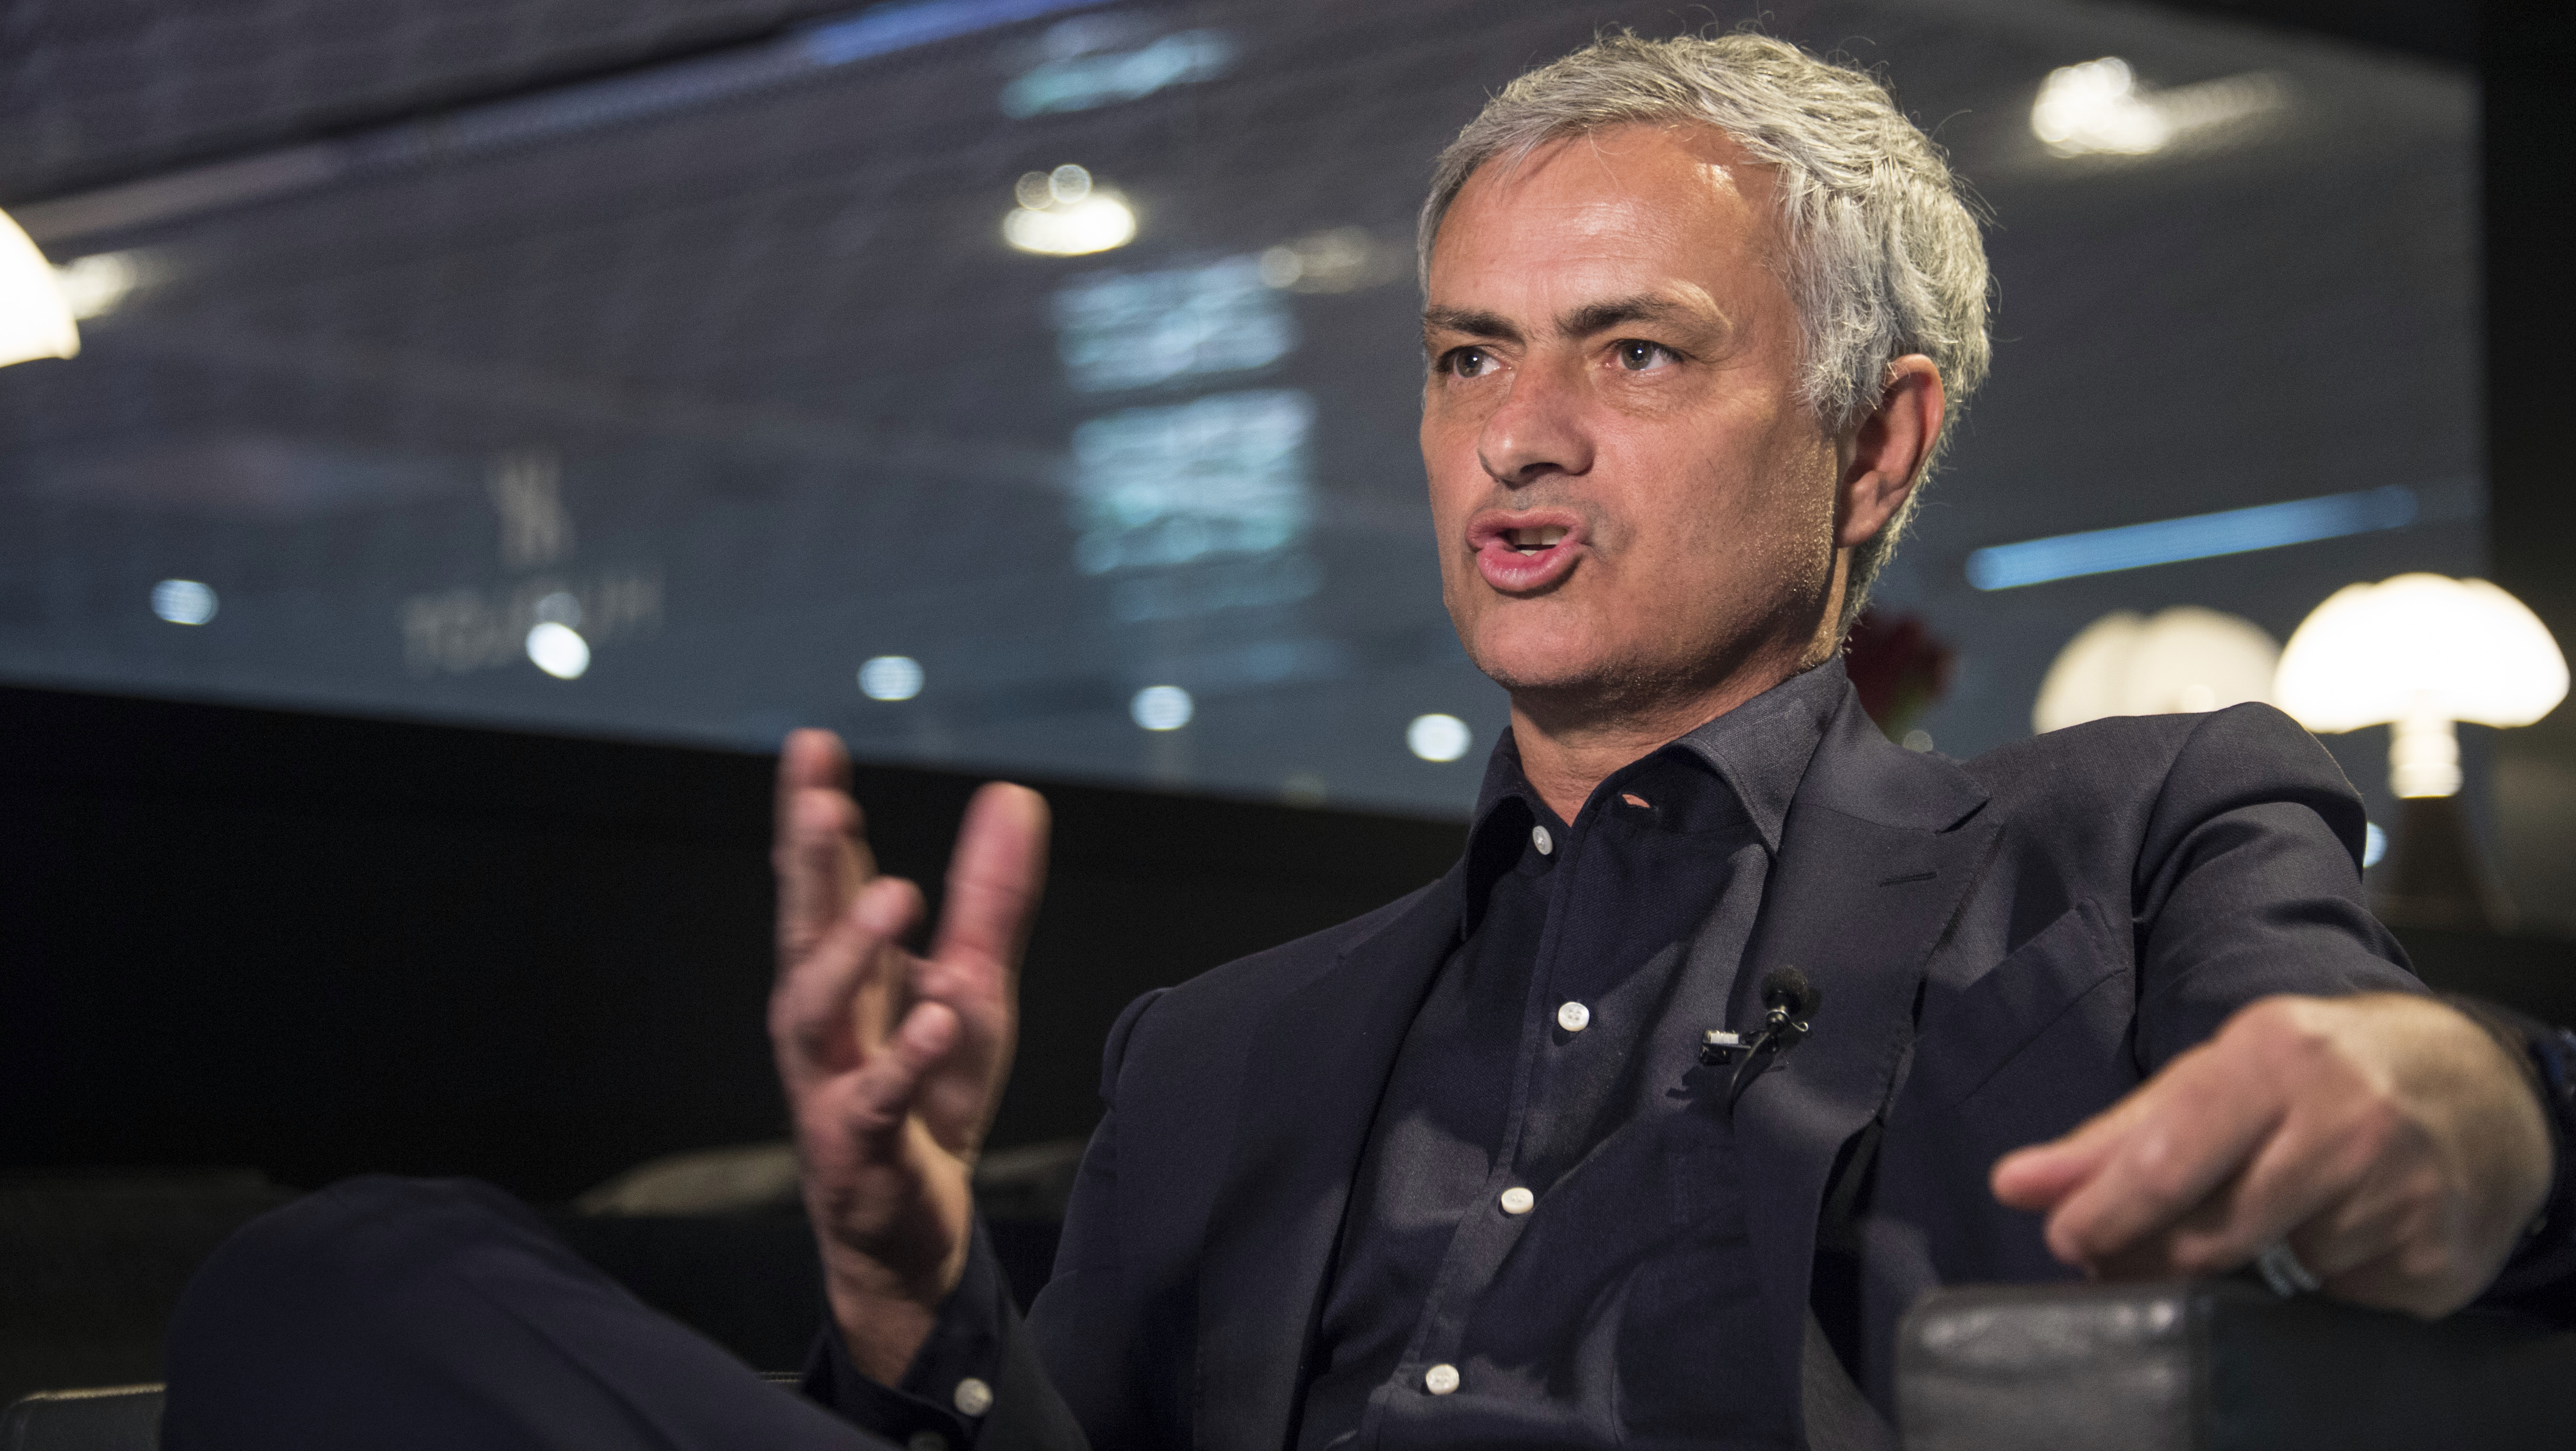 Mourinho promet son soutien aux autorités alors que la FA enquête sur les allégations Rudiger